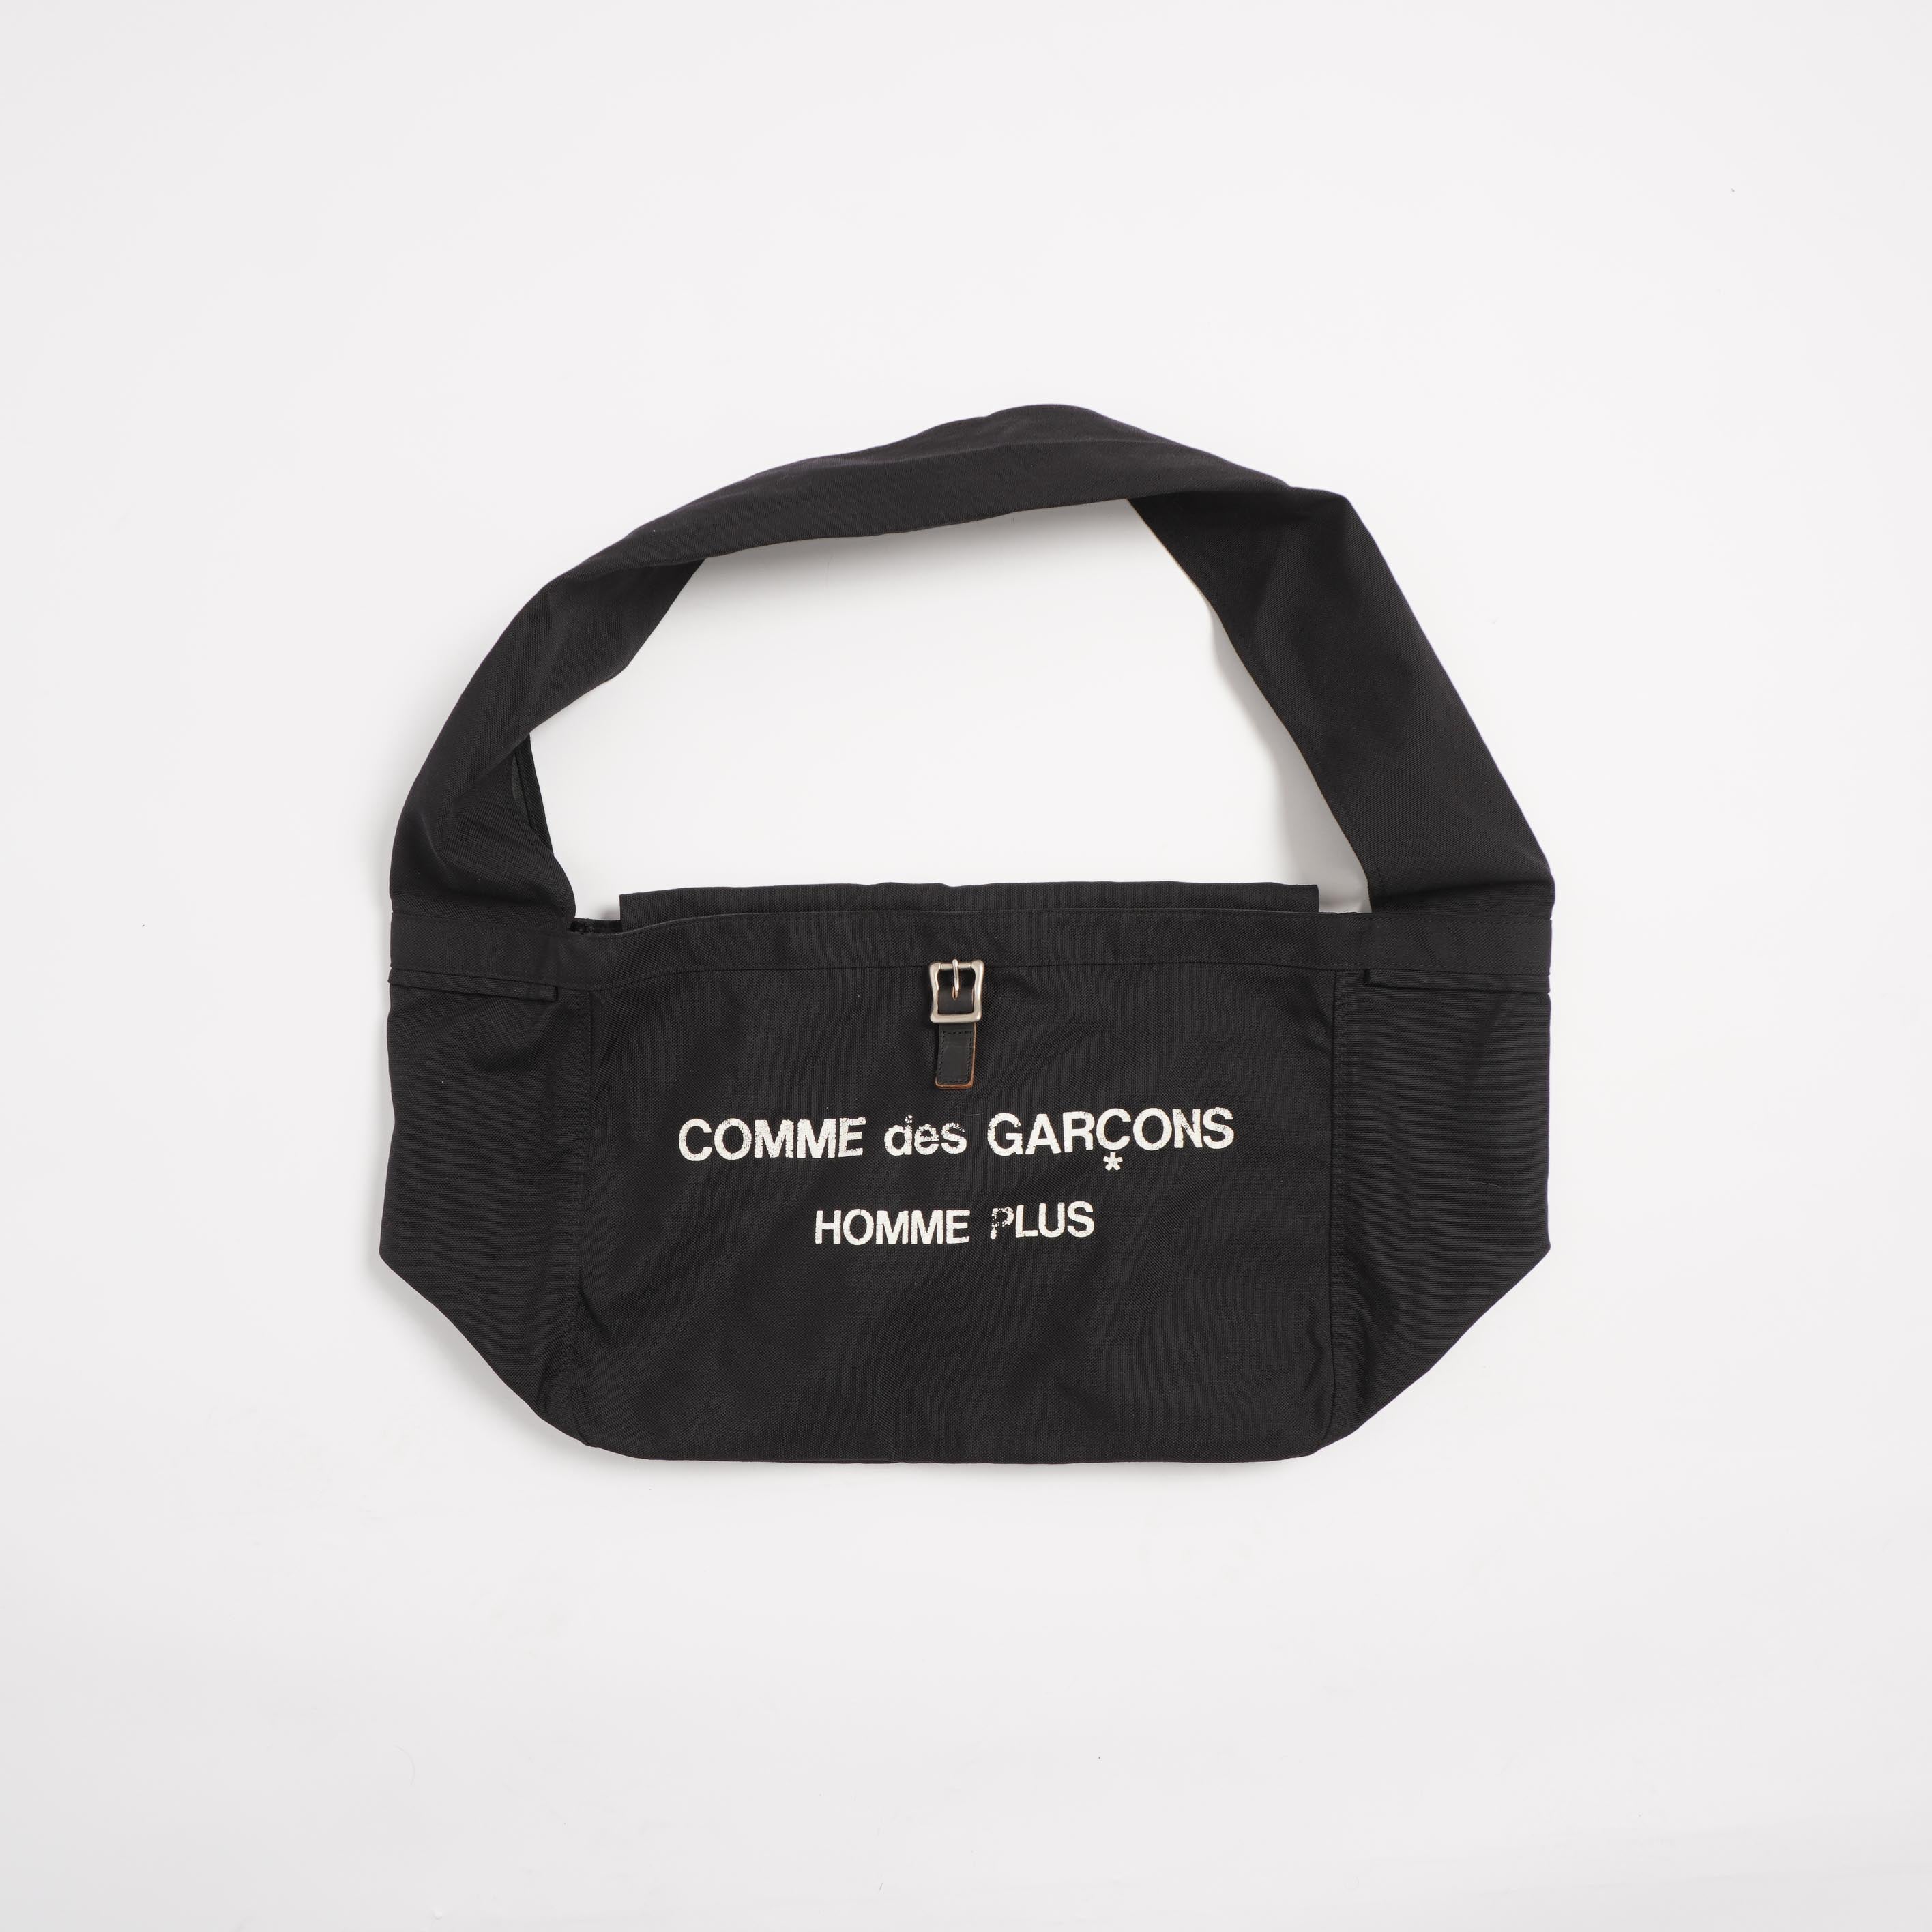 COMME DES GARCONS HOMME PLUS BAG – fabricsforsale